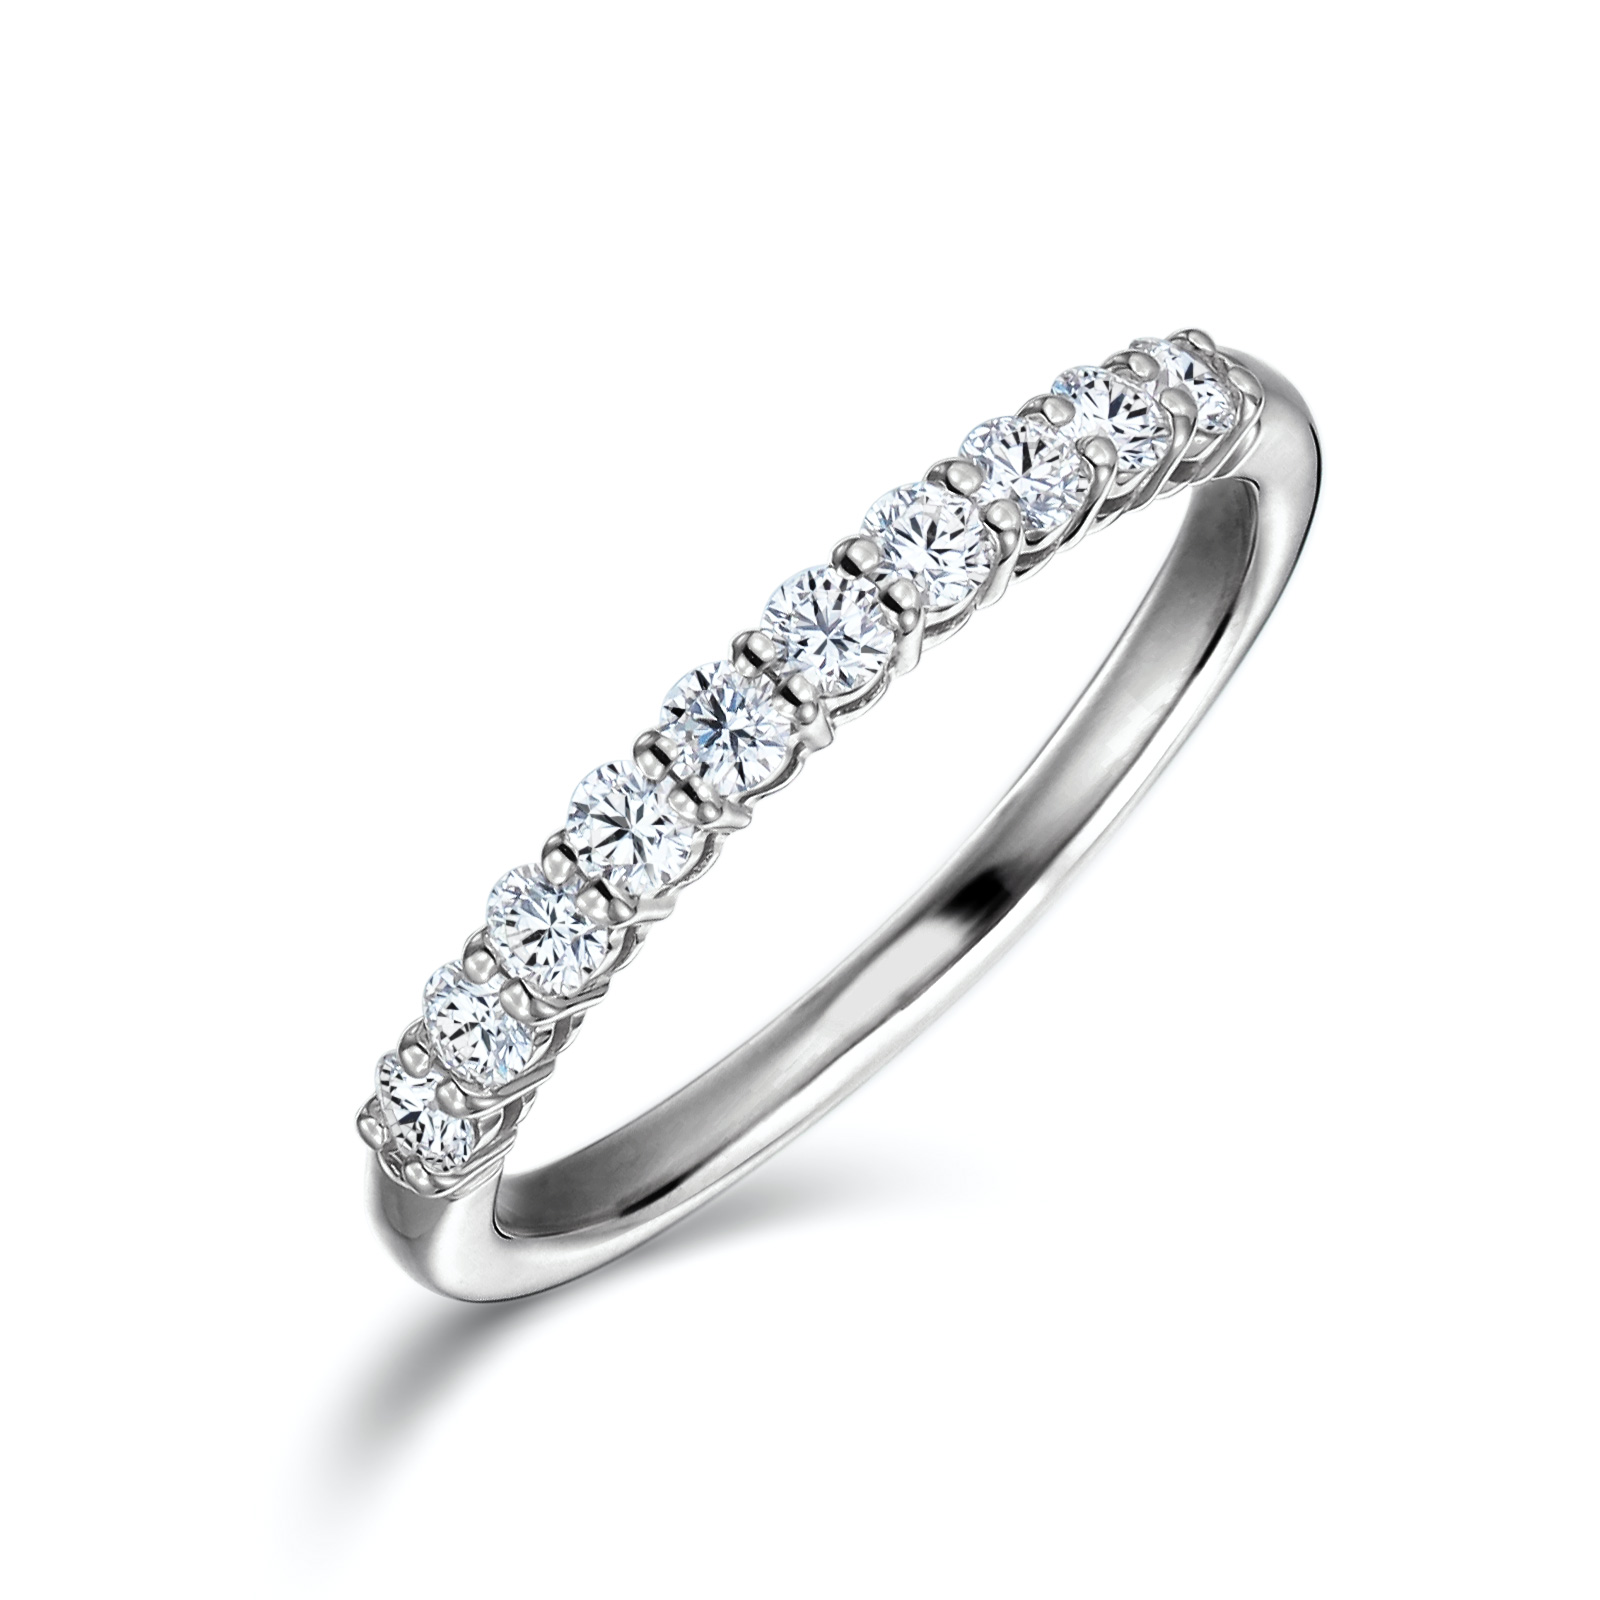 エタニティリング 30代の方、結婚10周年などの記念日や婚約指輪に 重ね付けも可愛い10万円〜の細めのハーフ・タイプ アウトレット